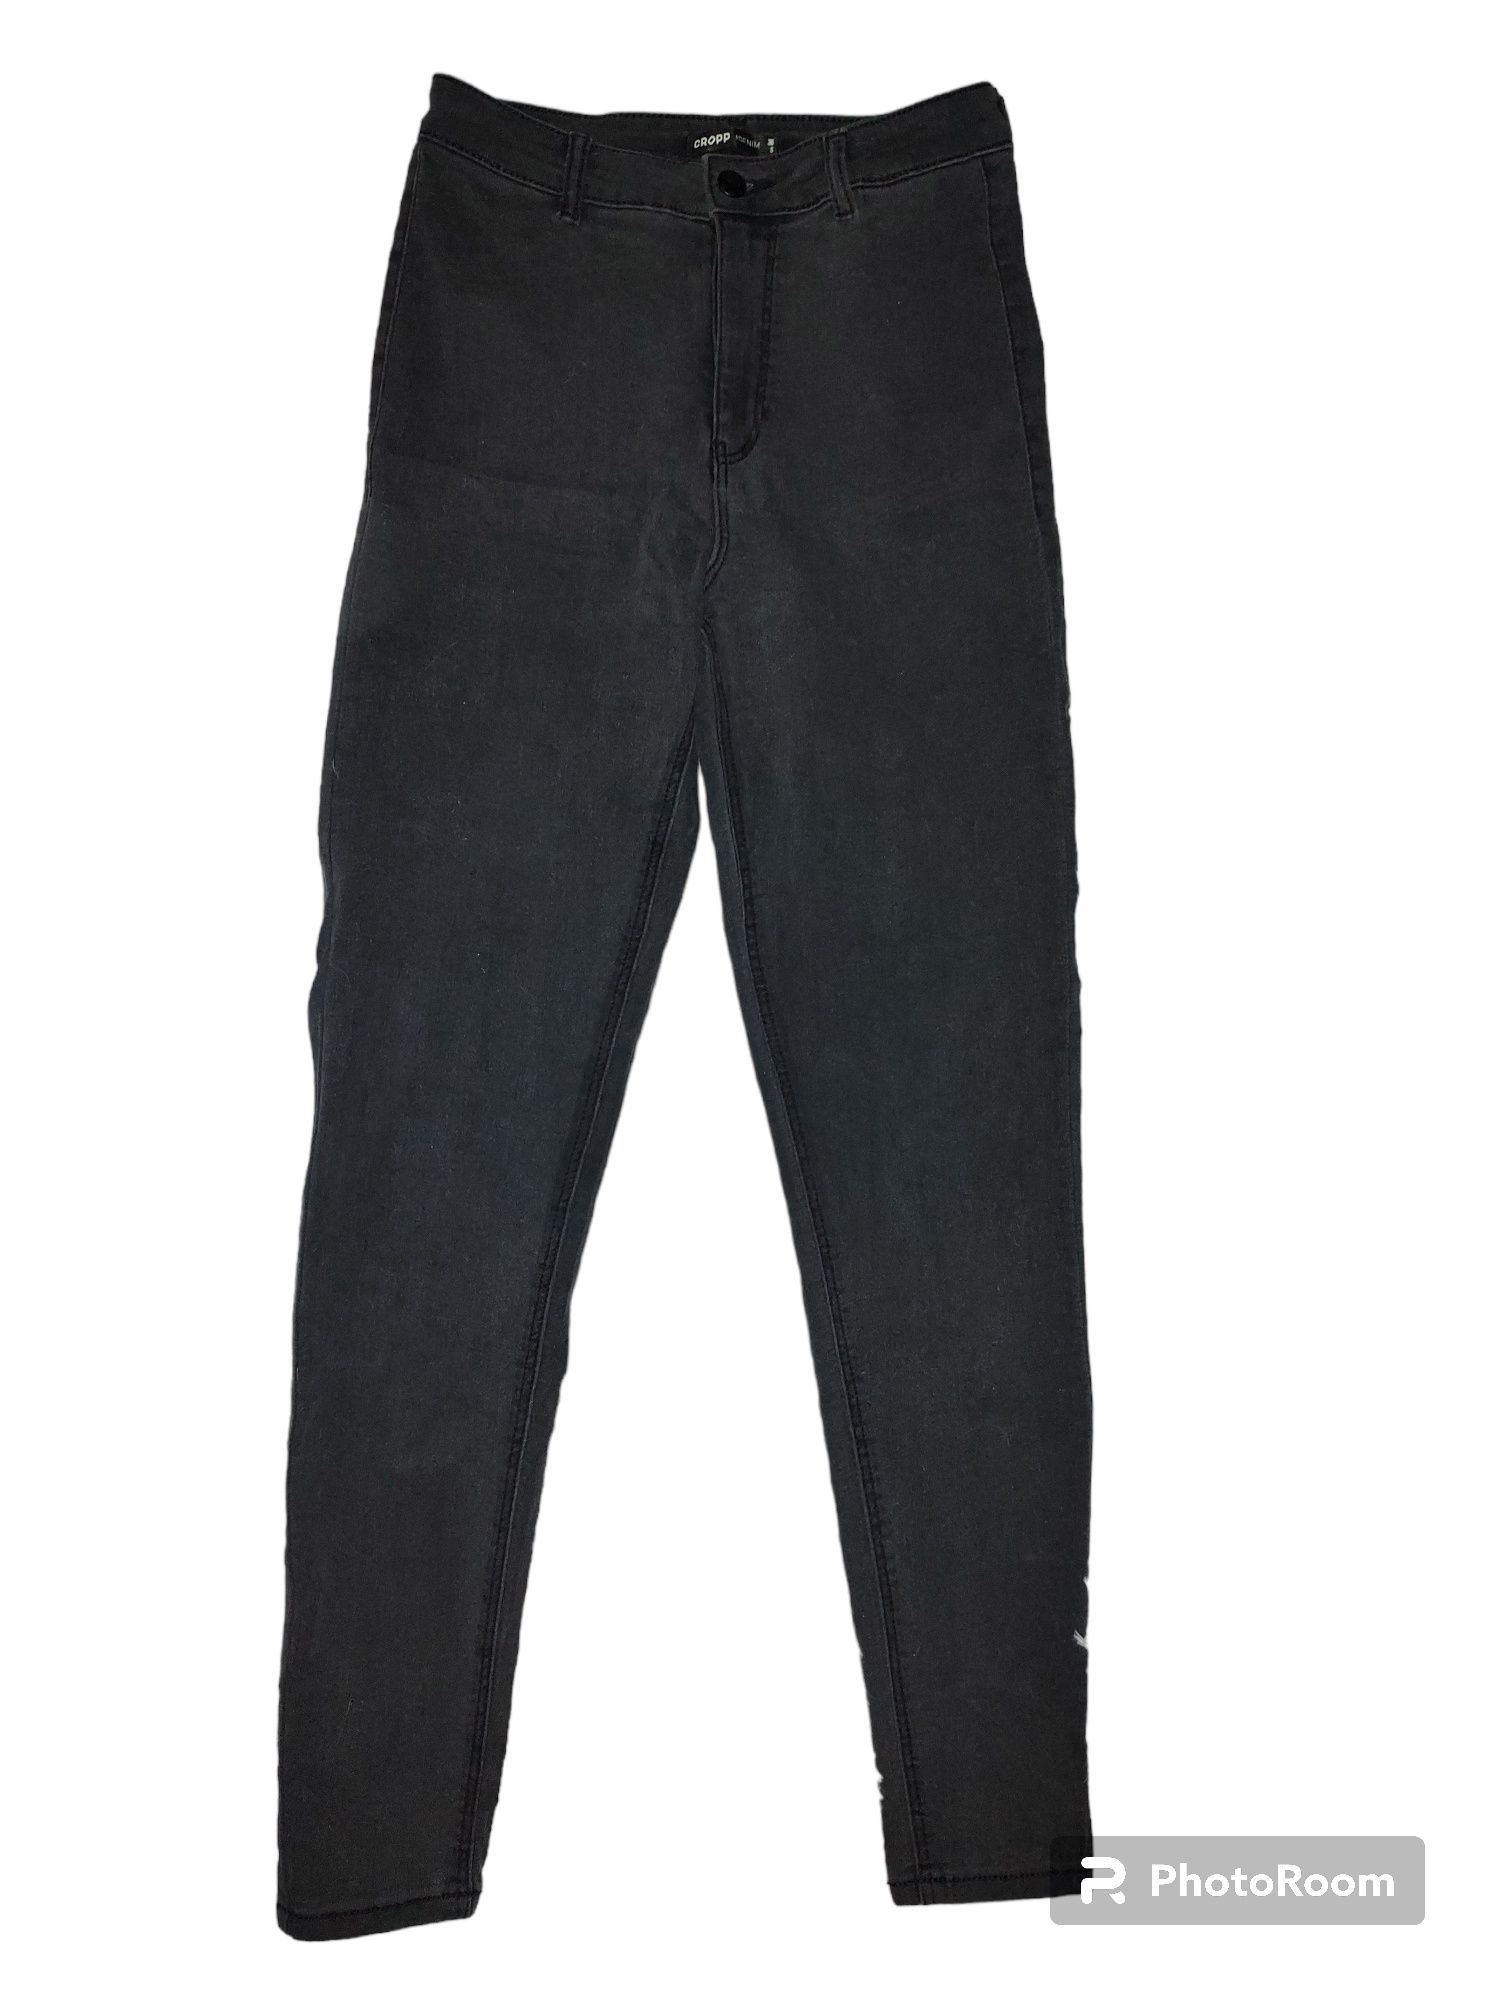 Szare rurki damskie Cropp 36 skinny spodnie dżinsowe jeansy